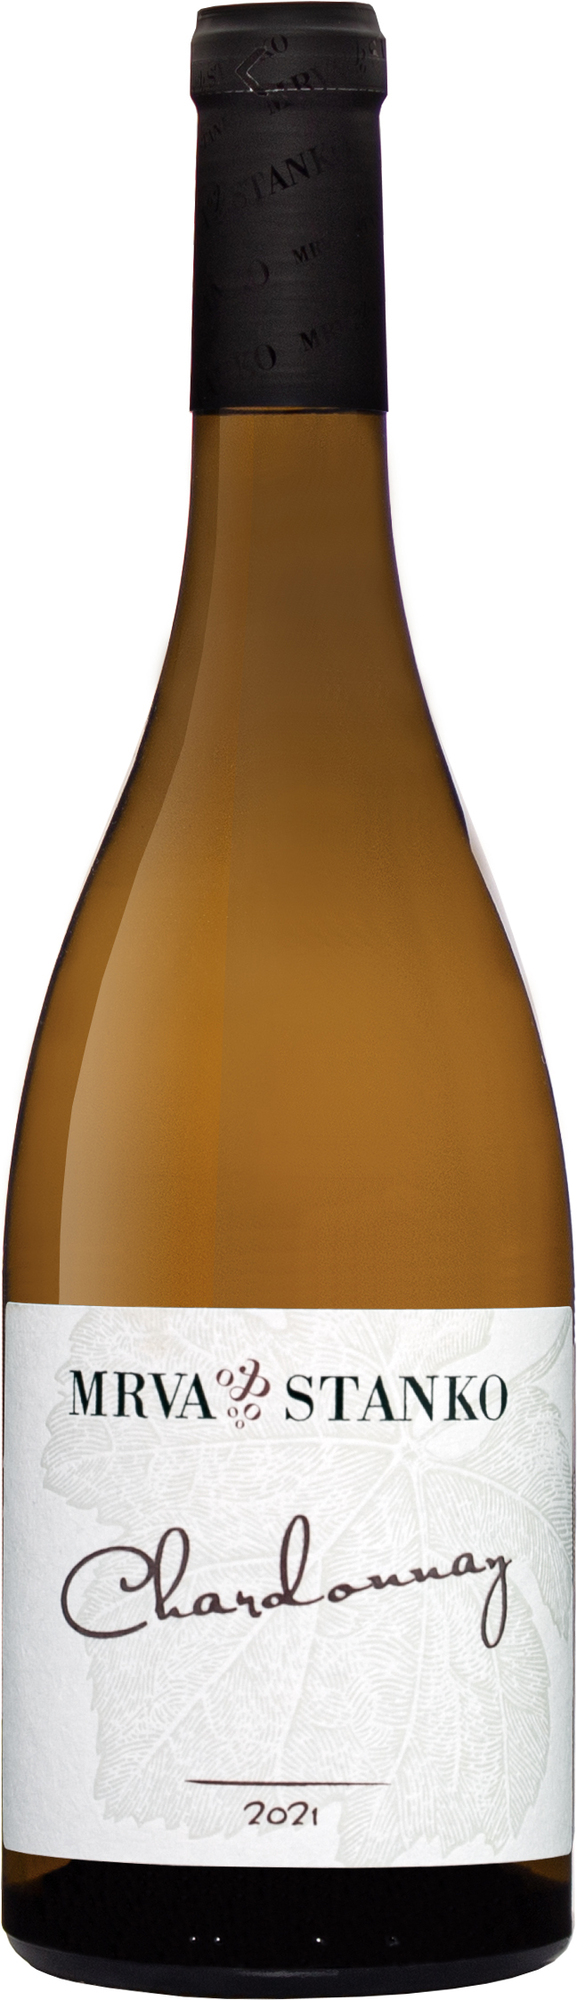 Mrva & Stanko Chardonnay 2021 13,5% 0,75l (čistá fľaša)